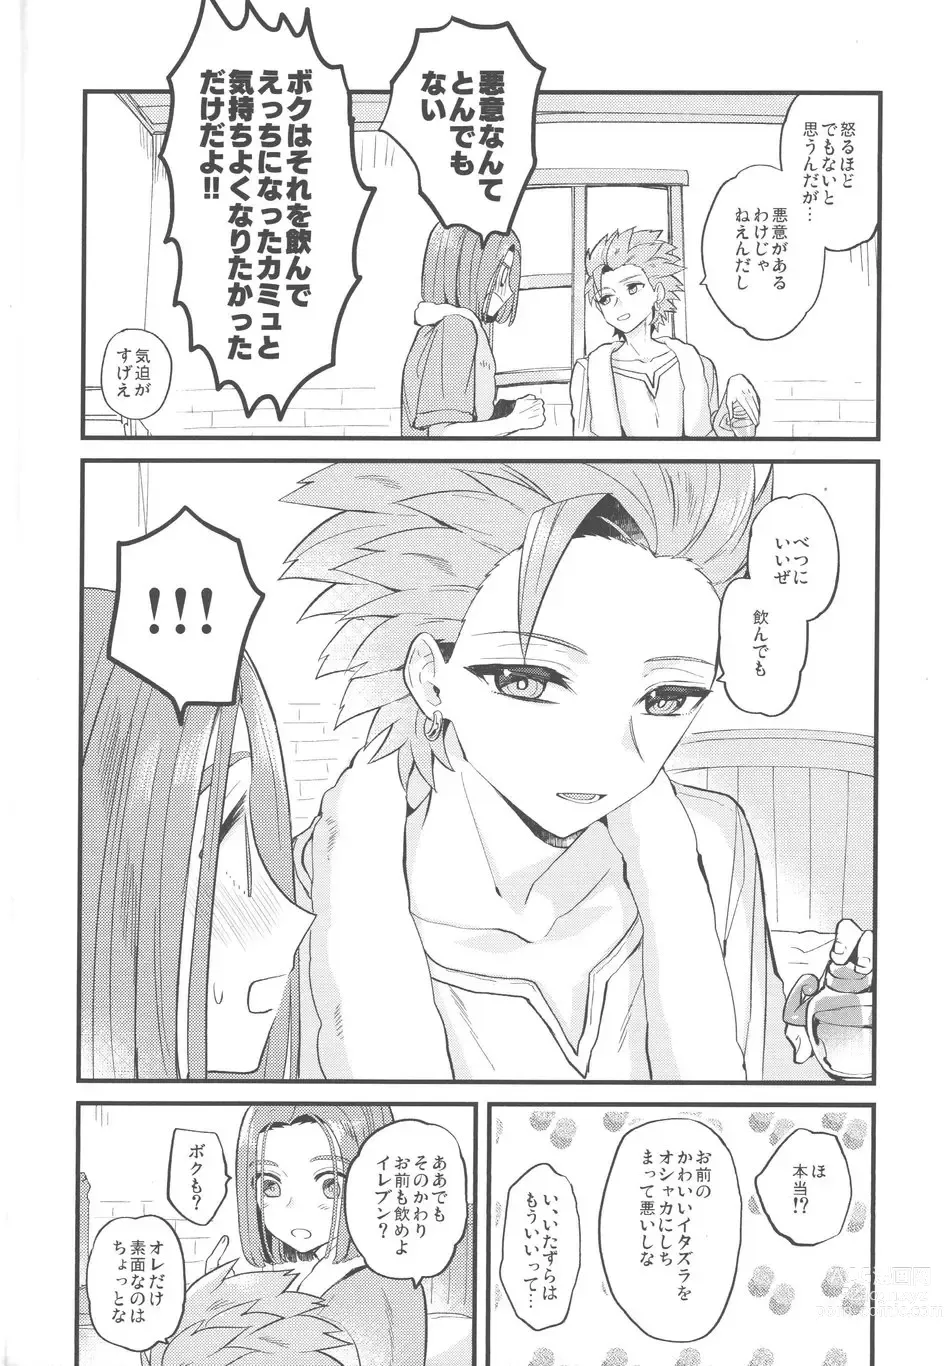 Page 9 of doujinshi Kimi wa zenbu o Mitooshi